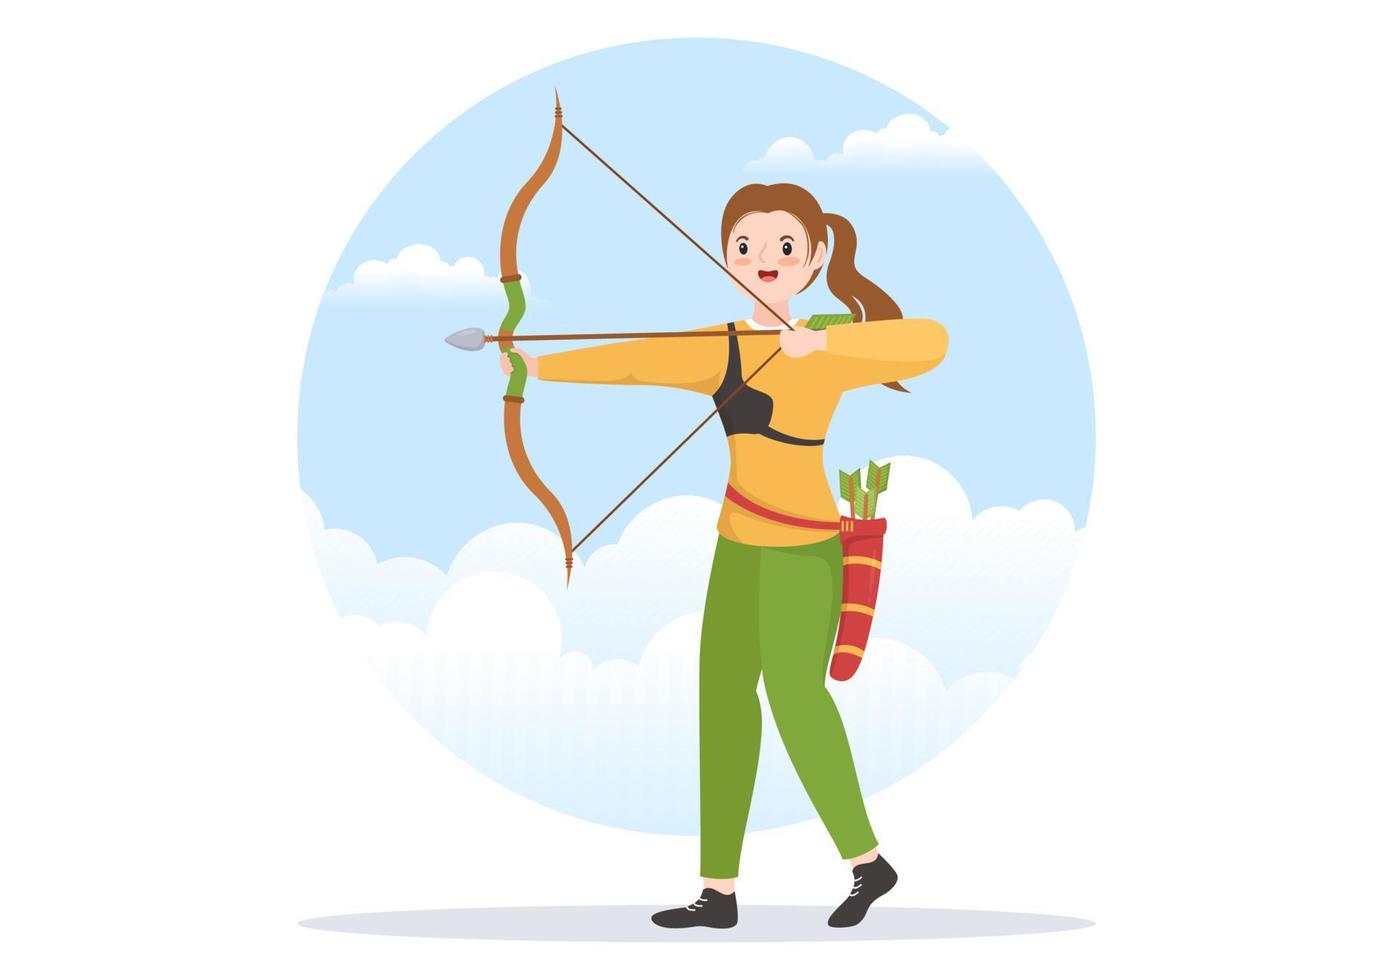 esporte de arco e flecha com arco e flecha apontando para o alvo para atividade recreativa ao ar livre em ilustração de modelo desenhado à mão plana dos desenhos animados vetor